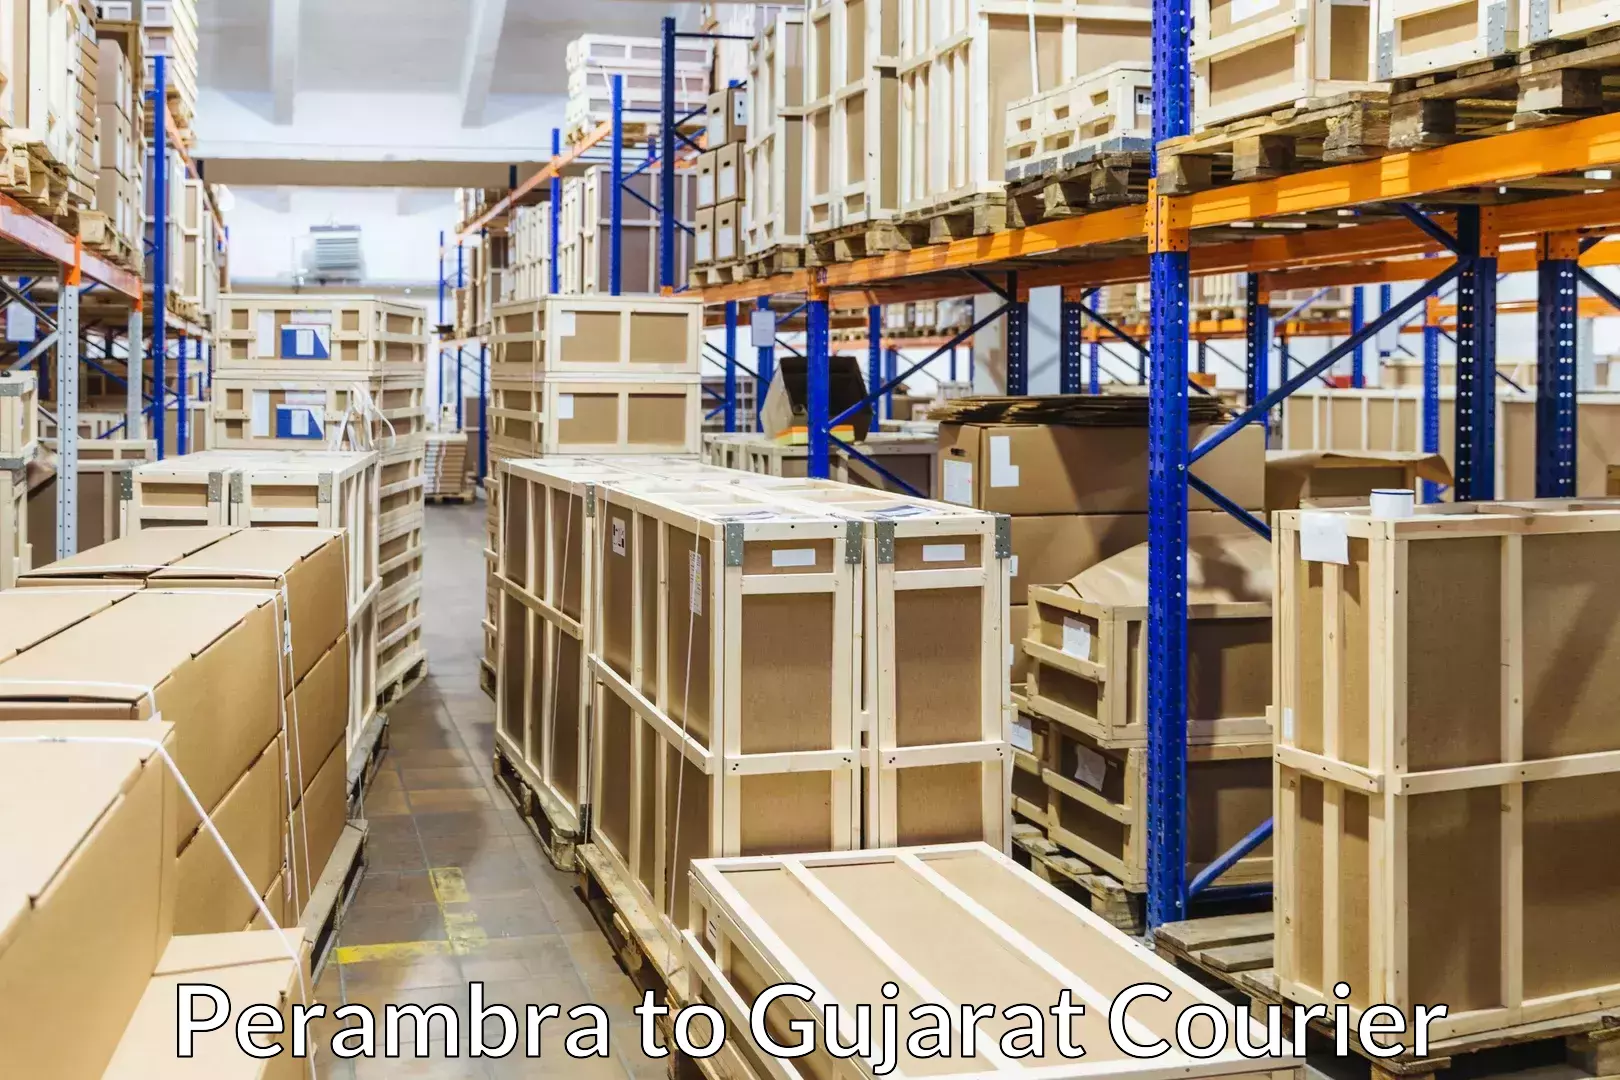 Customized furniture moving Perambra to Gujarat